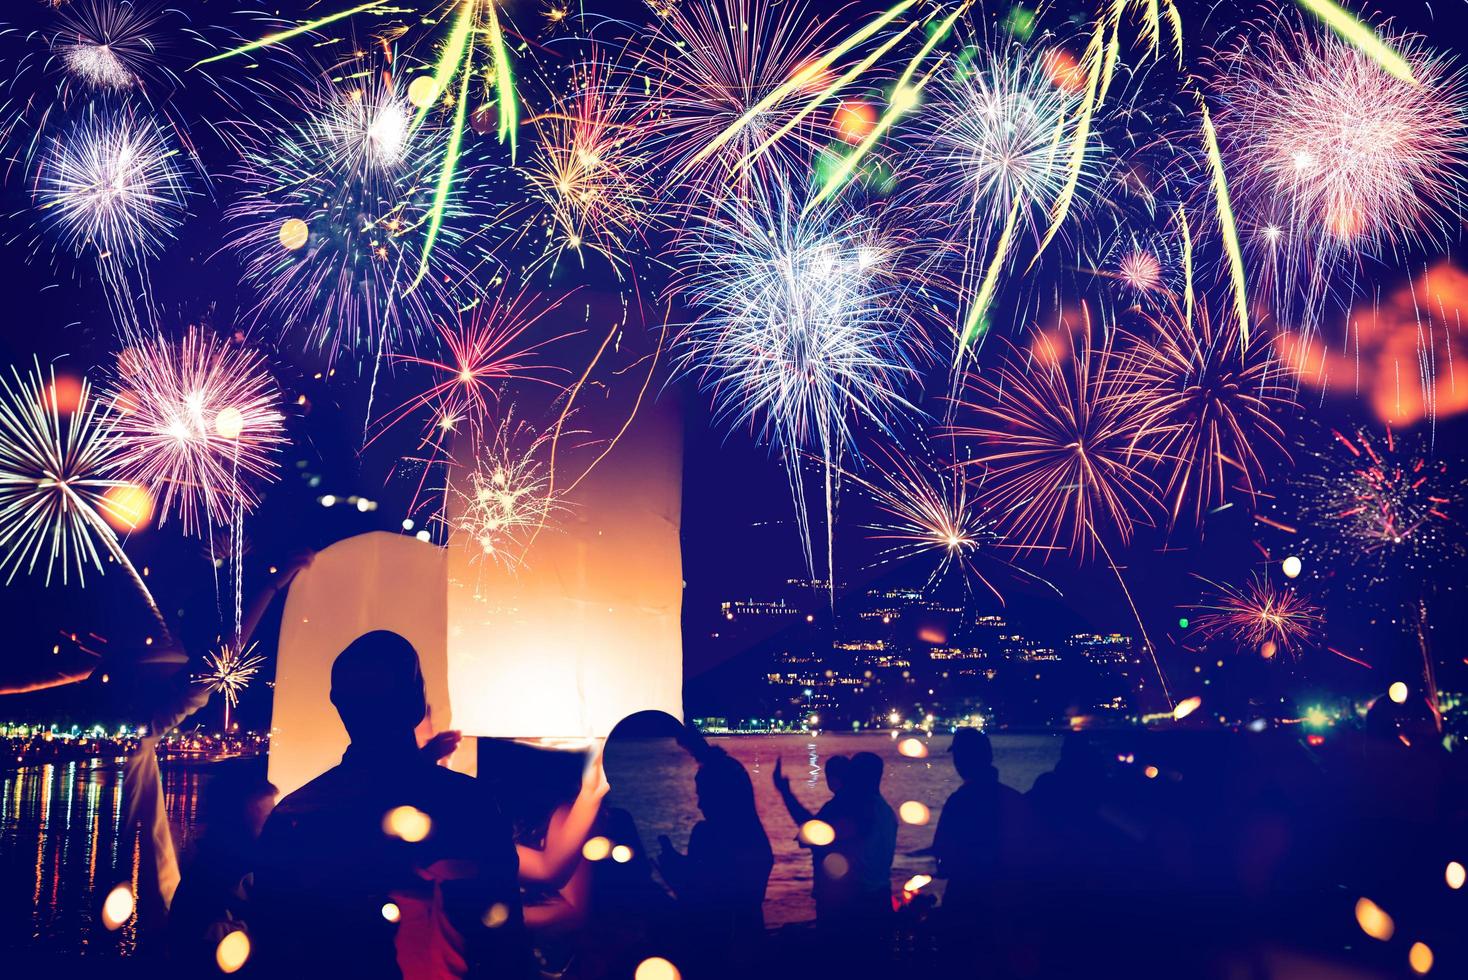 fuochi d'artificio con sagome di persone in una vacanza events.new anno fuochi d'artificio sulla spiaggia. i viaggiatori e le persone festeggiano il capodanno alla spiaggia di kamala phuket, in thailandia. foto